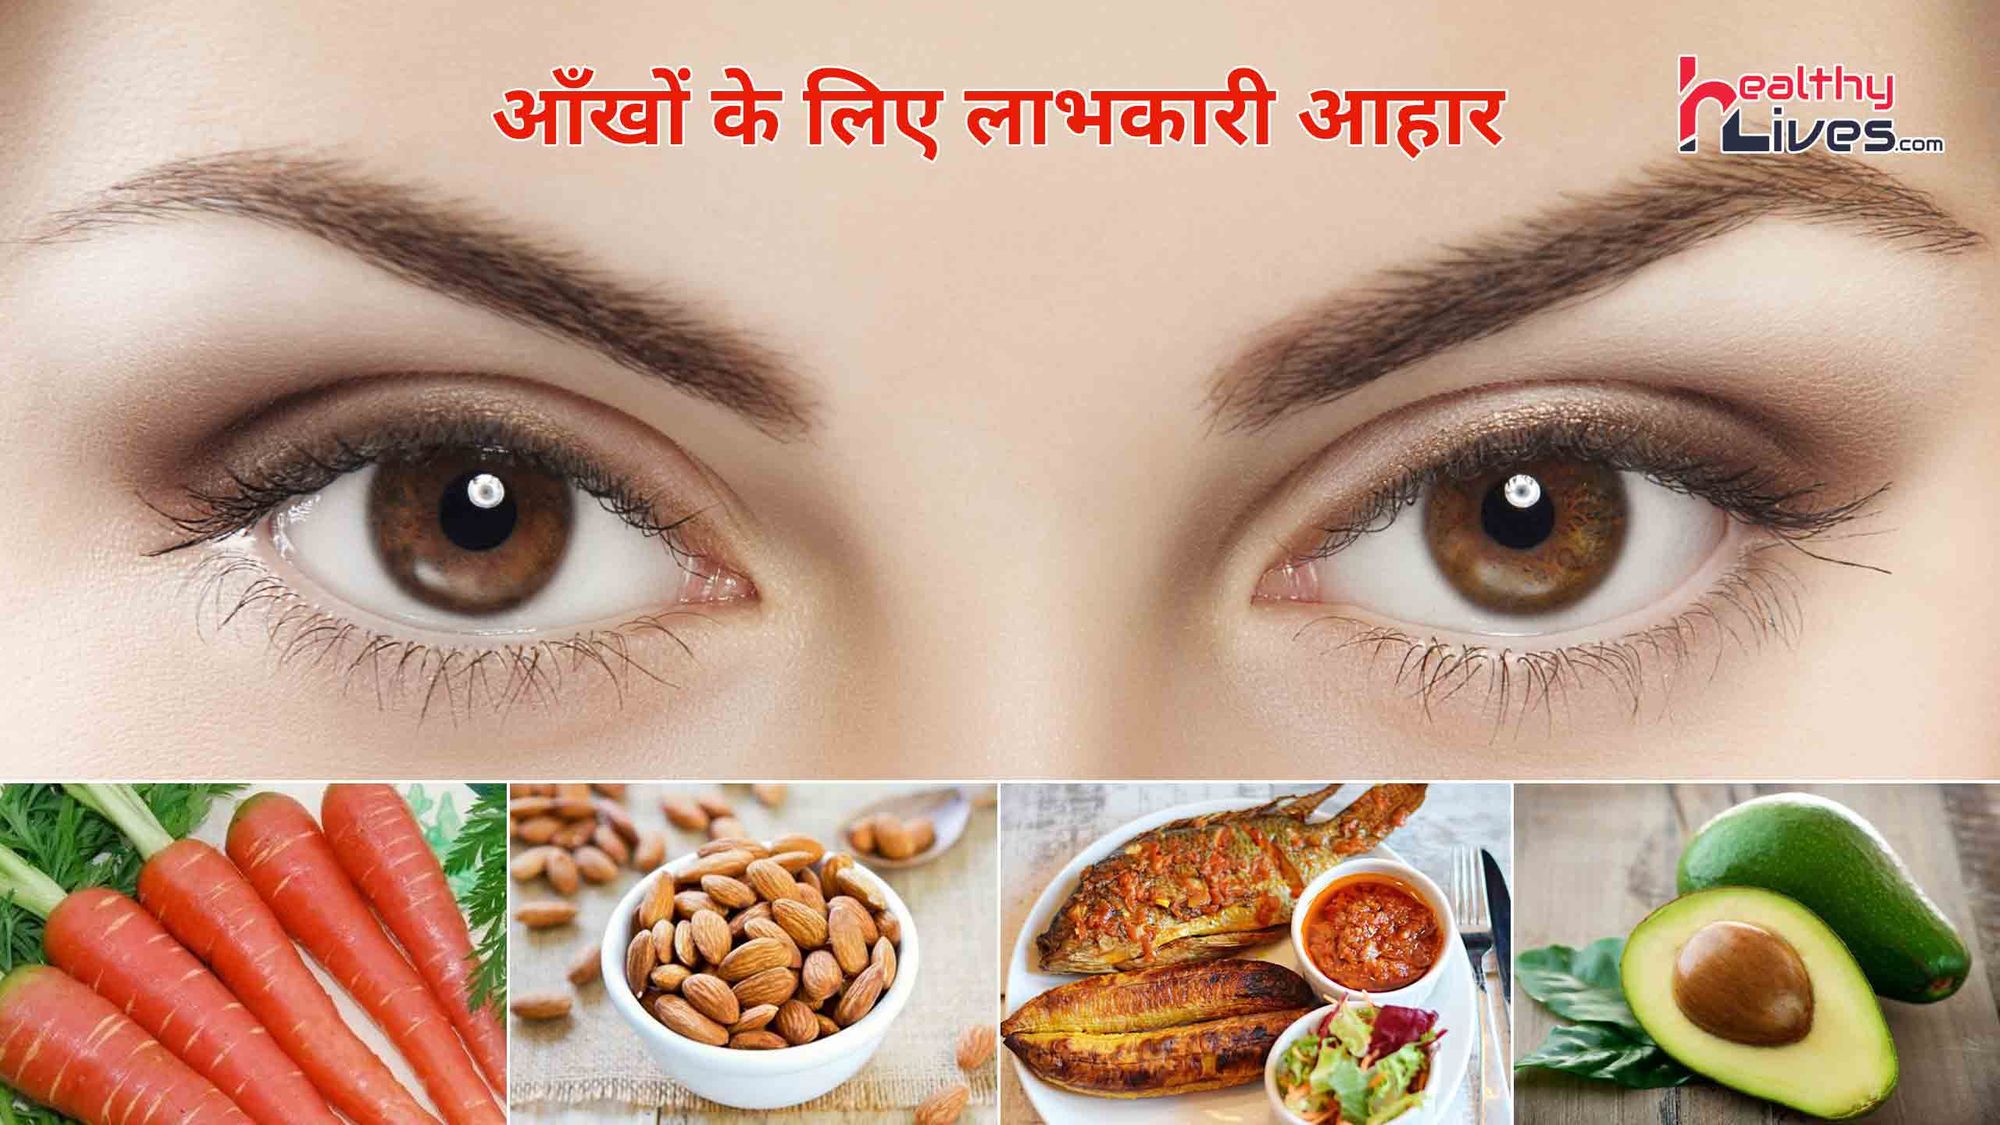 Foods For Eye Health: आँखों को हमेशा स्वस्थ बनाये रखने के लिए करें इन आहारों का सेवन